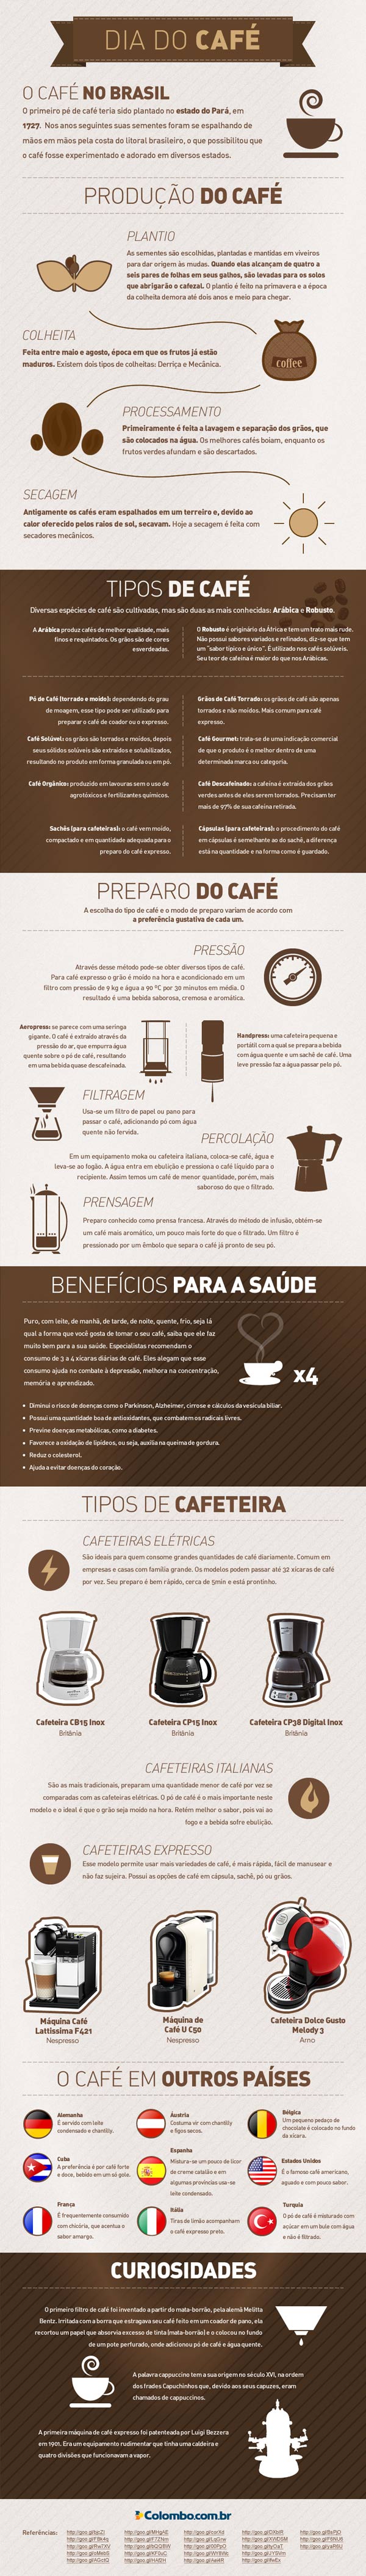 info-cafe2